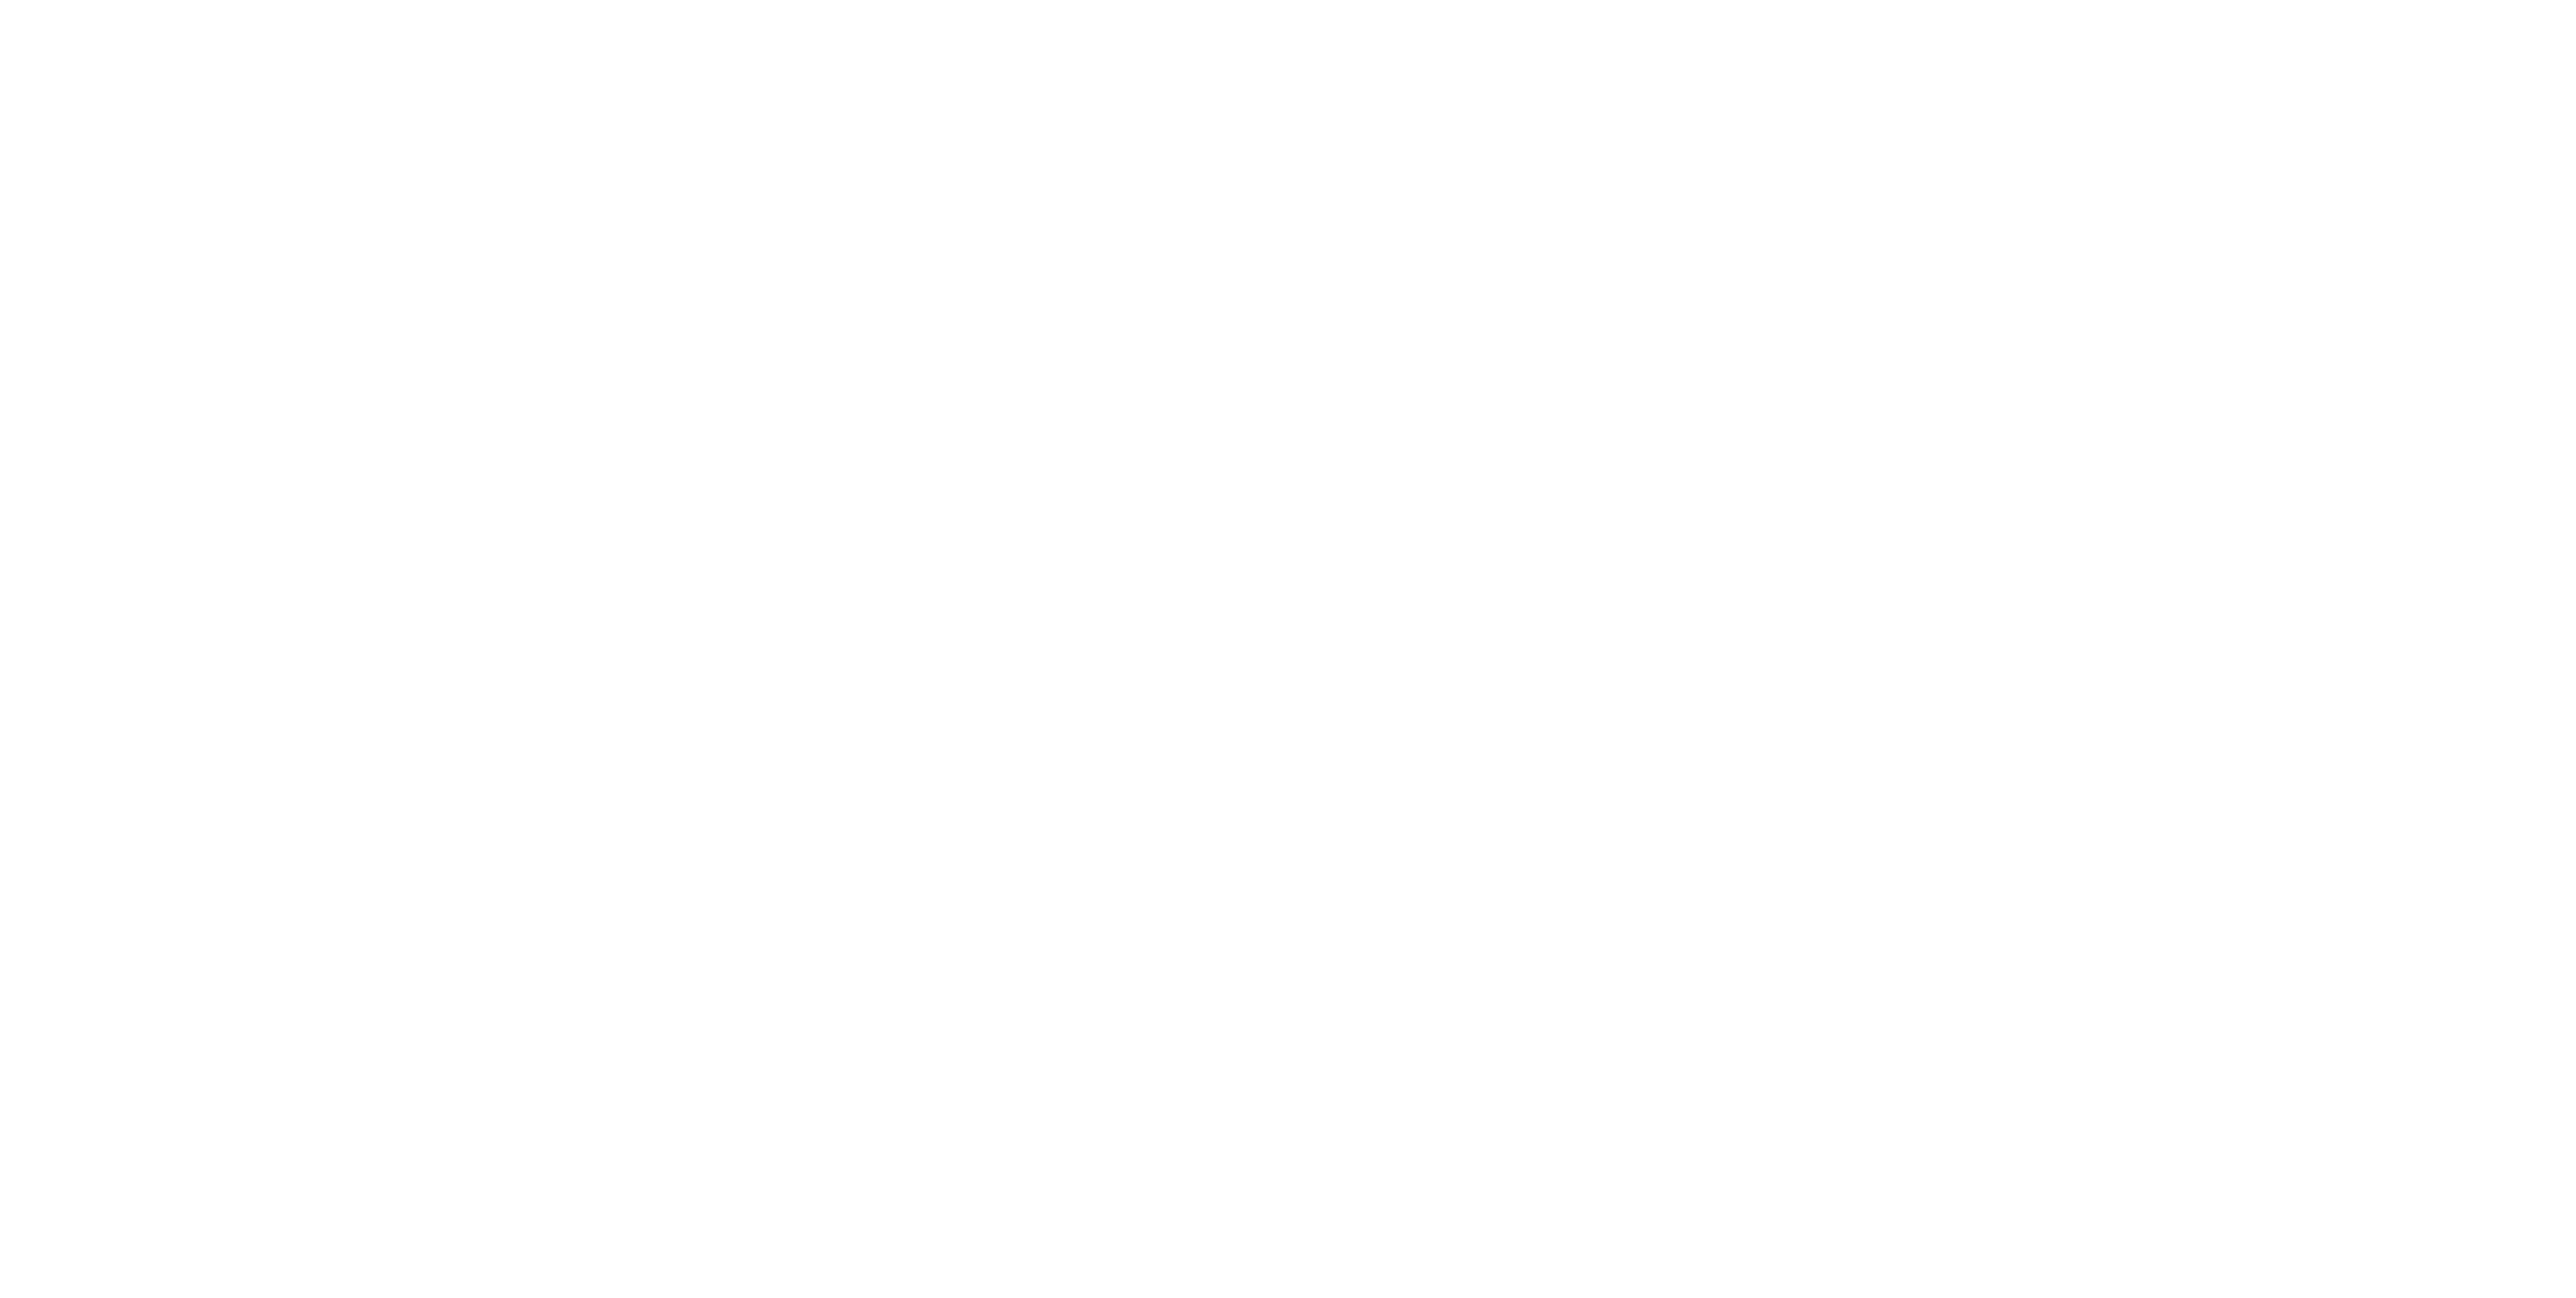 PA Housing